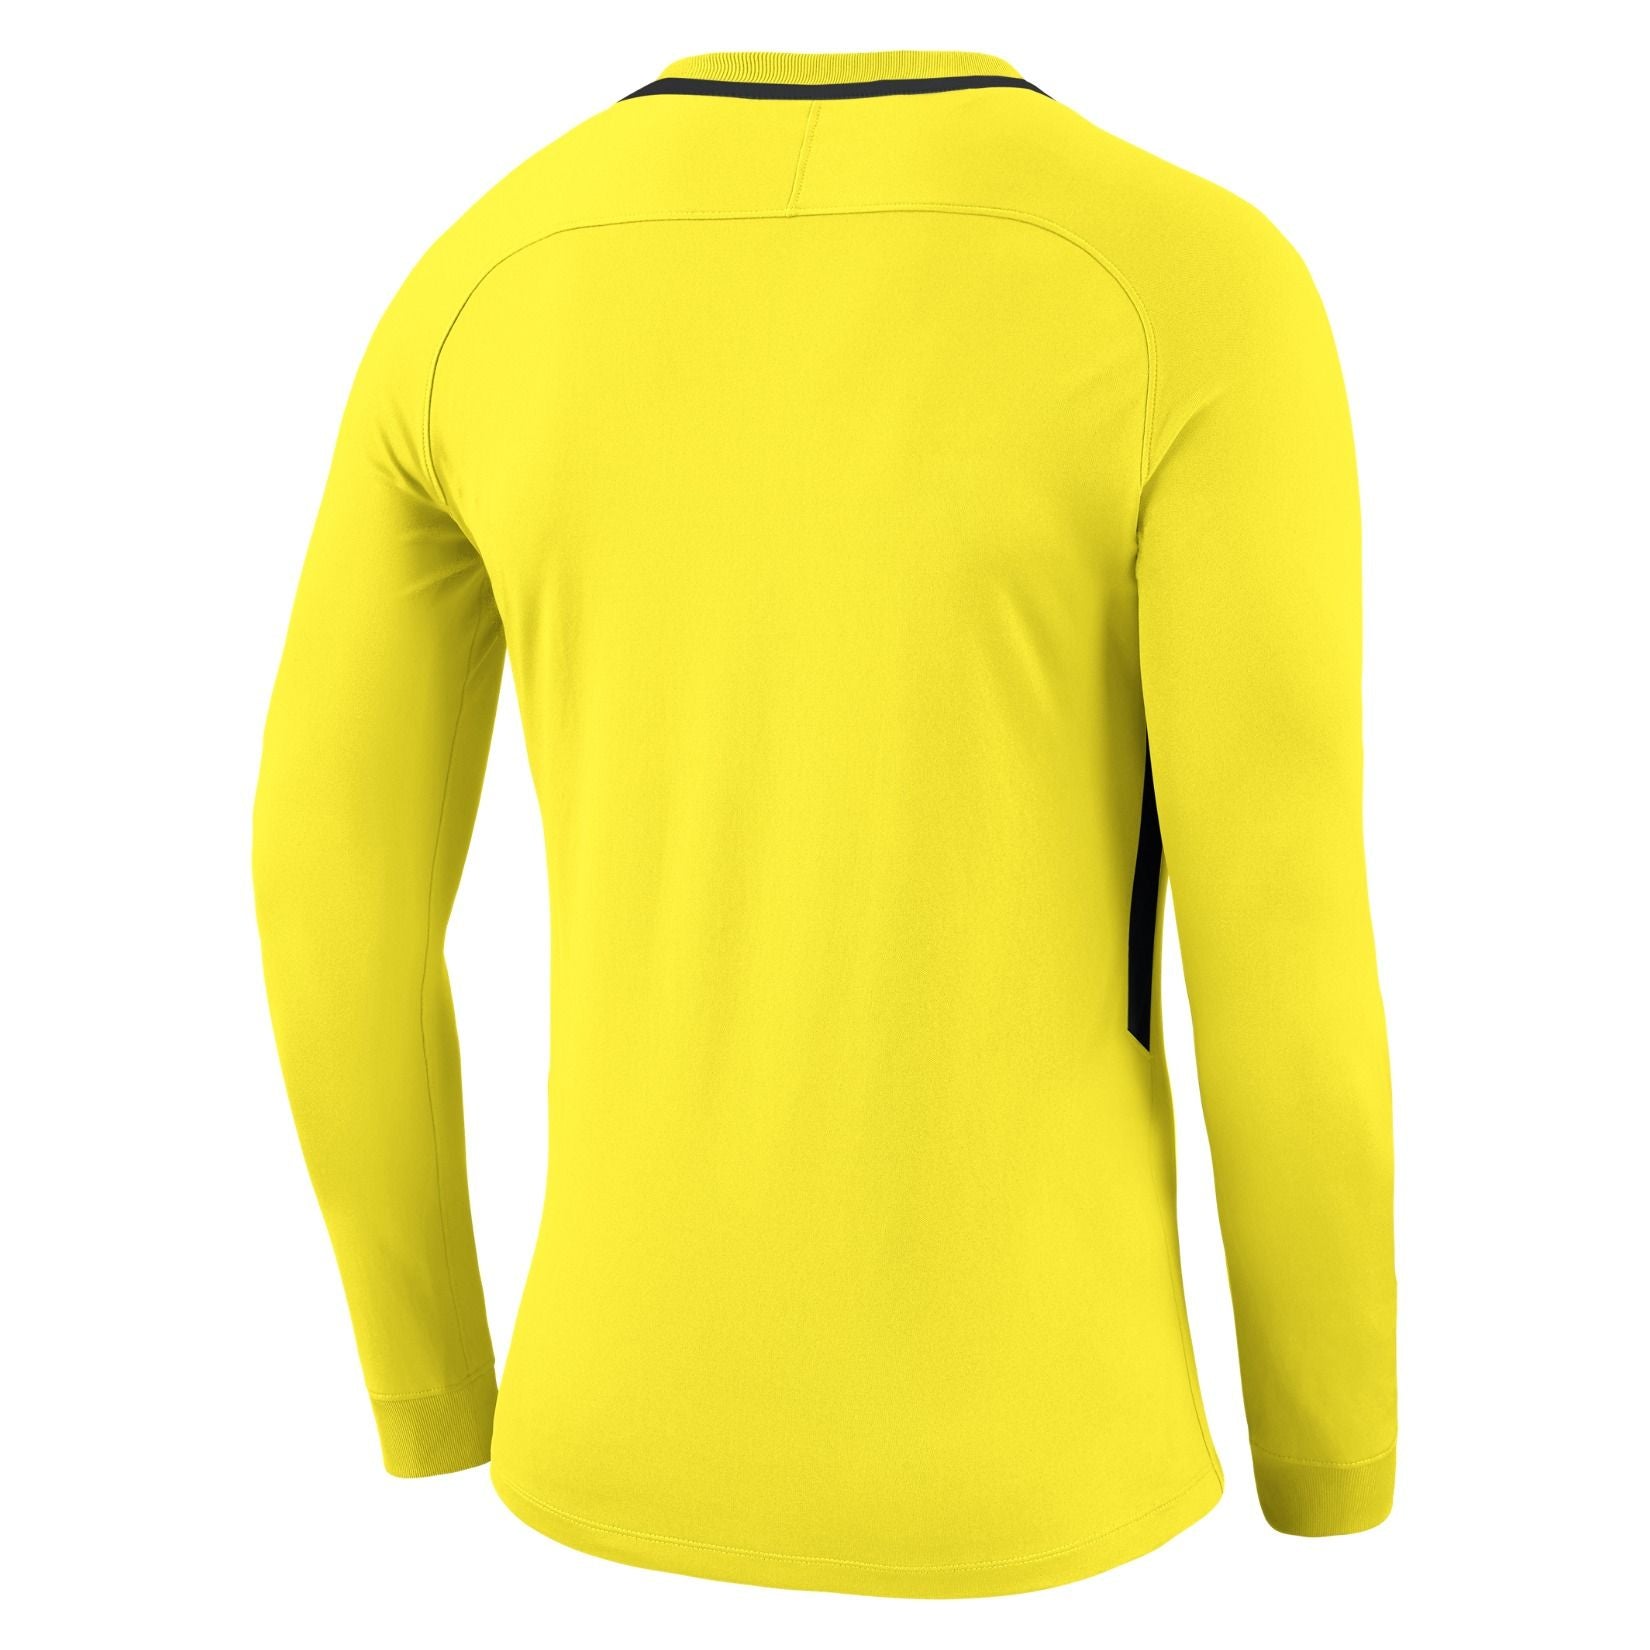 Buy The Best Goal Keeper Clothing Online, Adelaide, Australia – Soccer ...